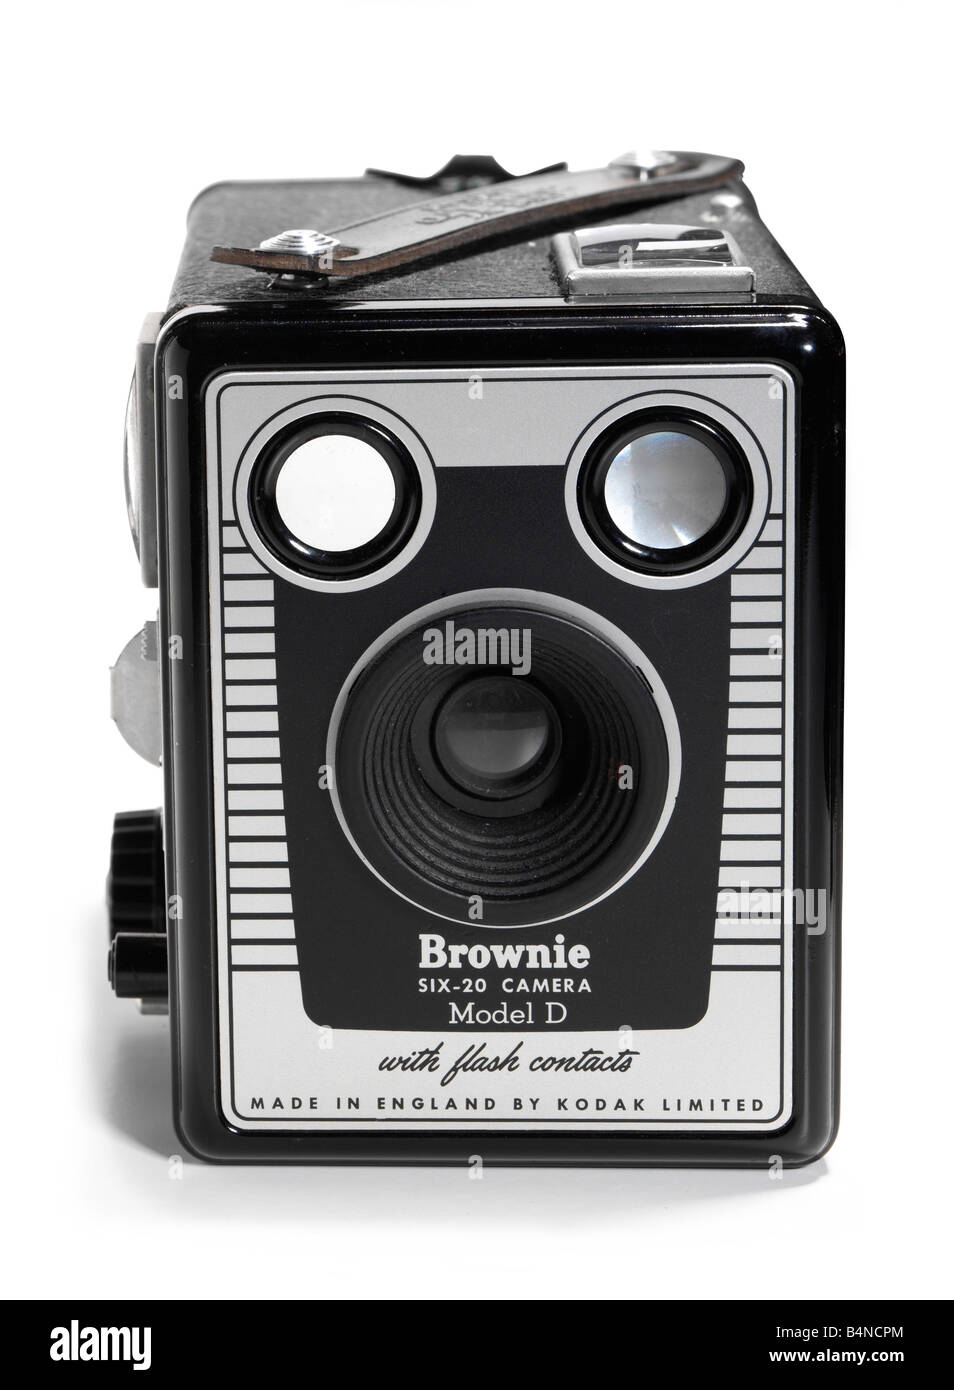 Brownie-D fotocamera Kodak sulla parte anteriore Foto Stock